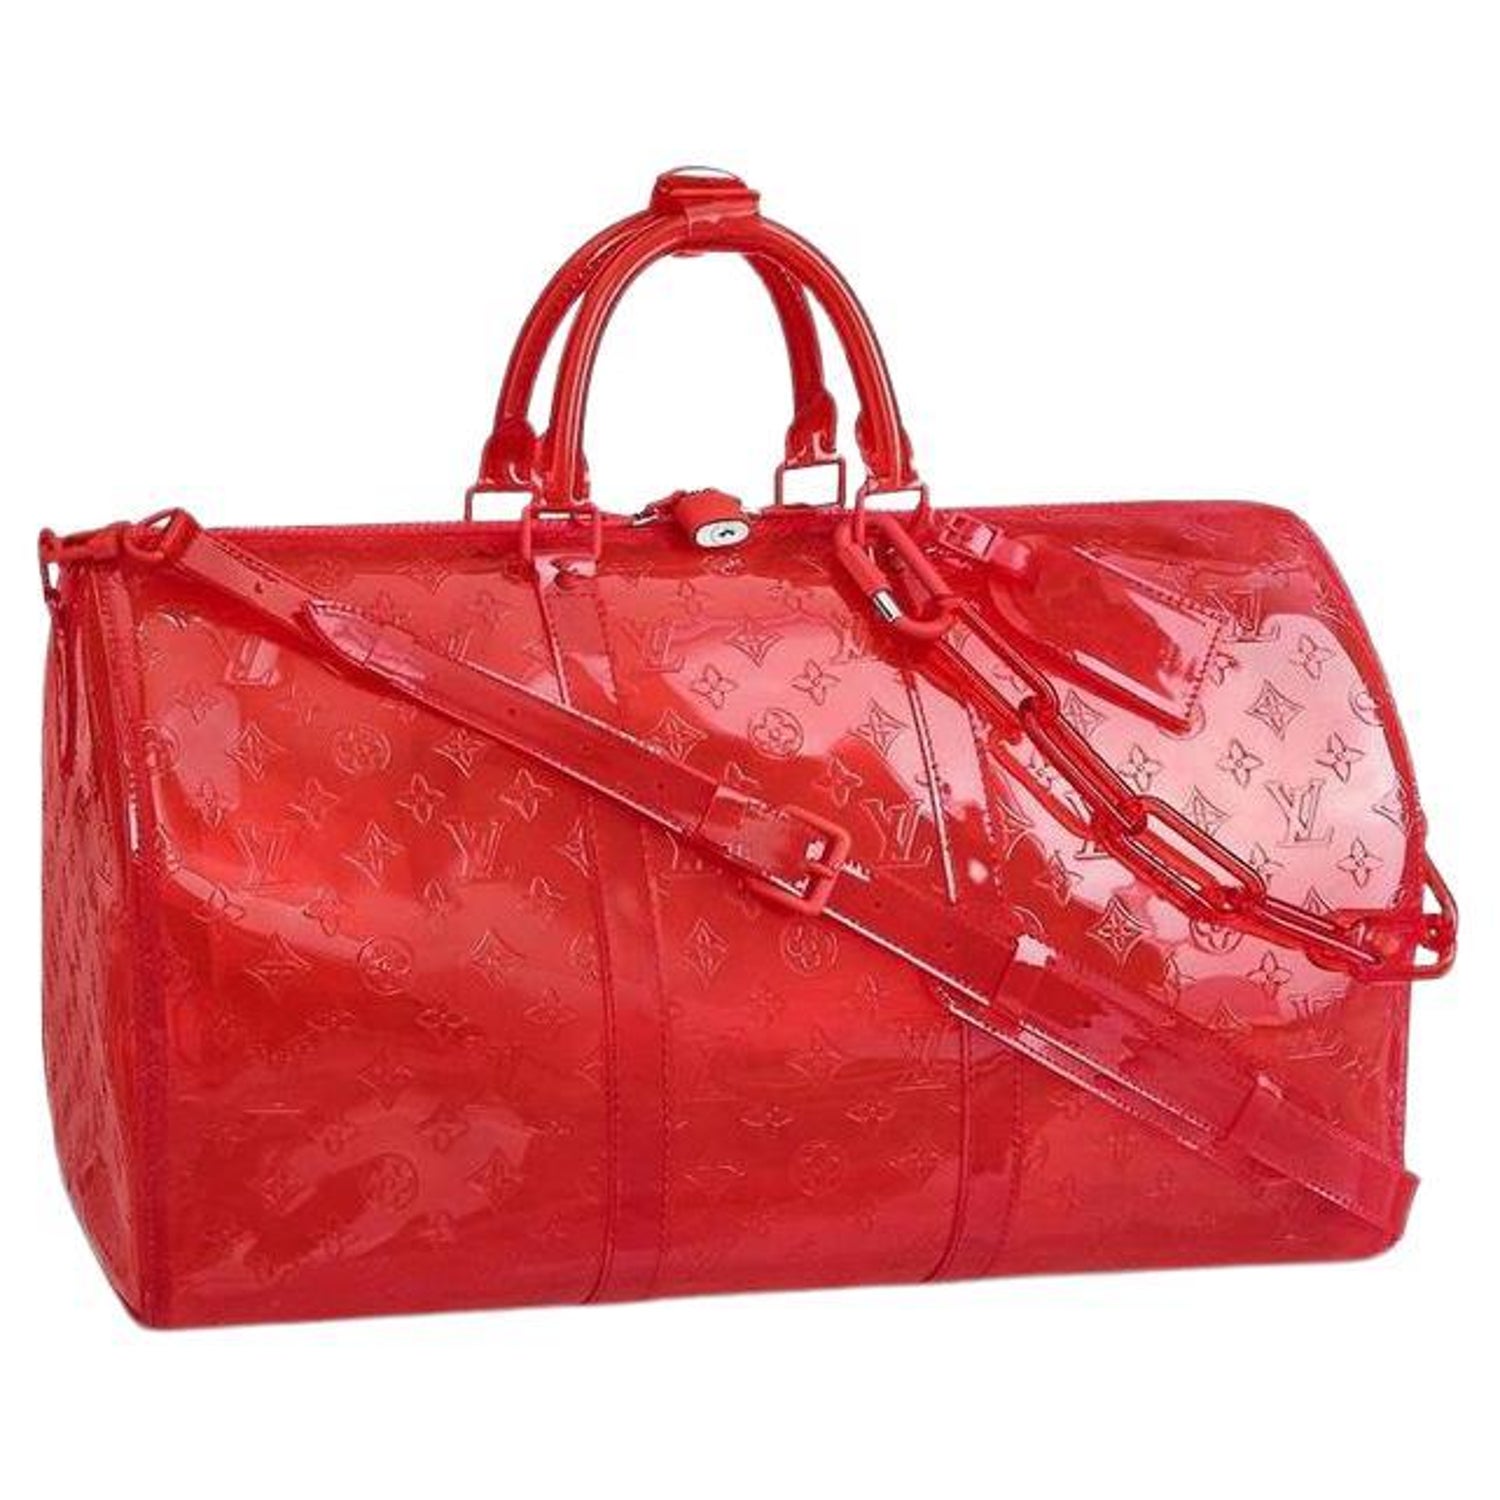 Louis Vuitton Transparent Bag - 4 For Sale on 1stDibs  lv see through bag, see  thru louis vuitton bag, transparent louis vuitton bag